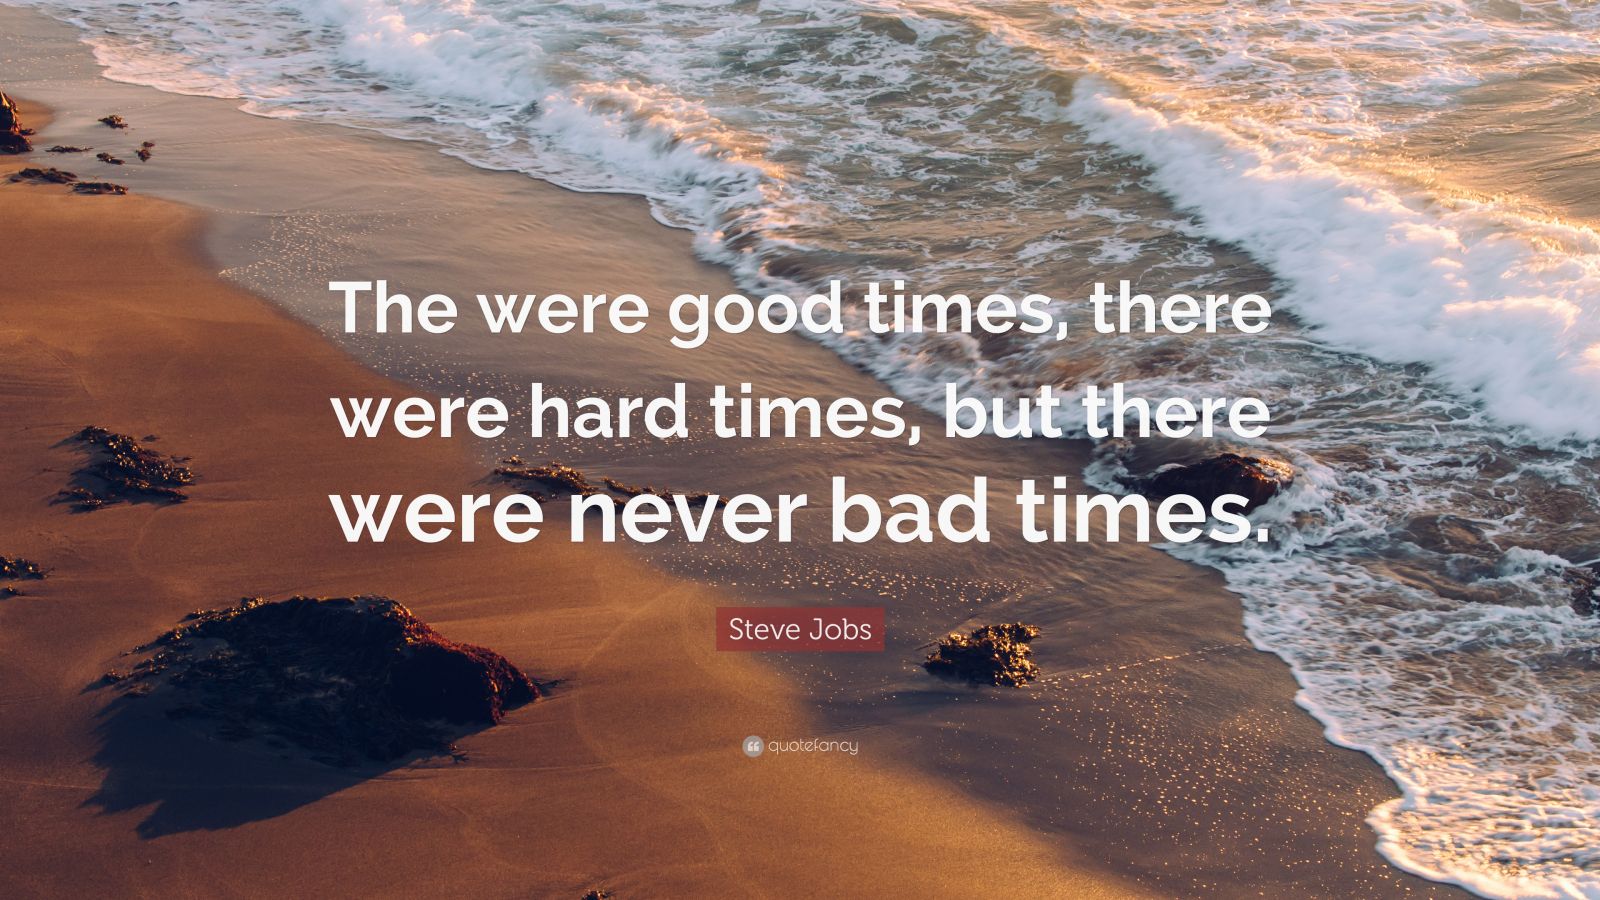 Gambar Quotes: Waktu yang Baik vs Waktu yang Sulit